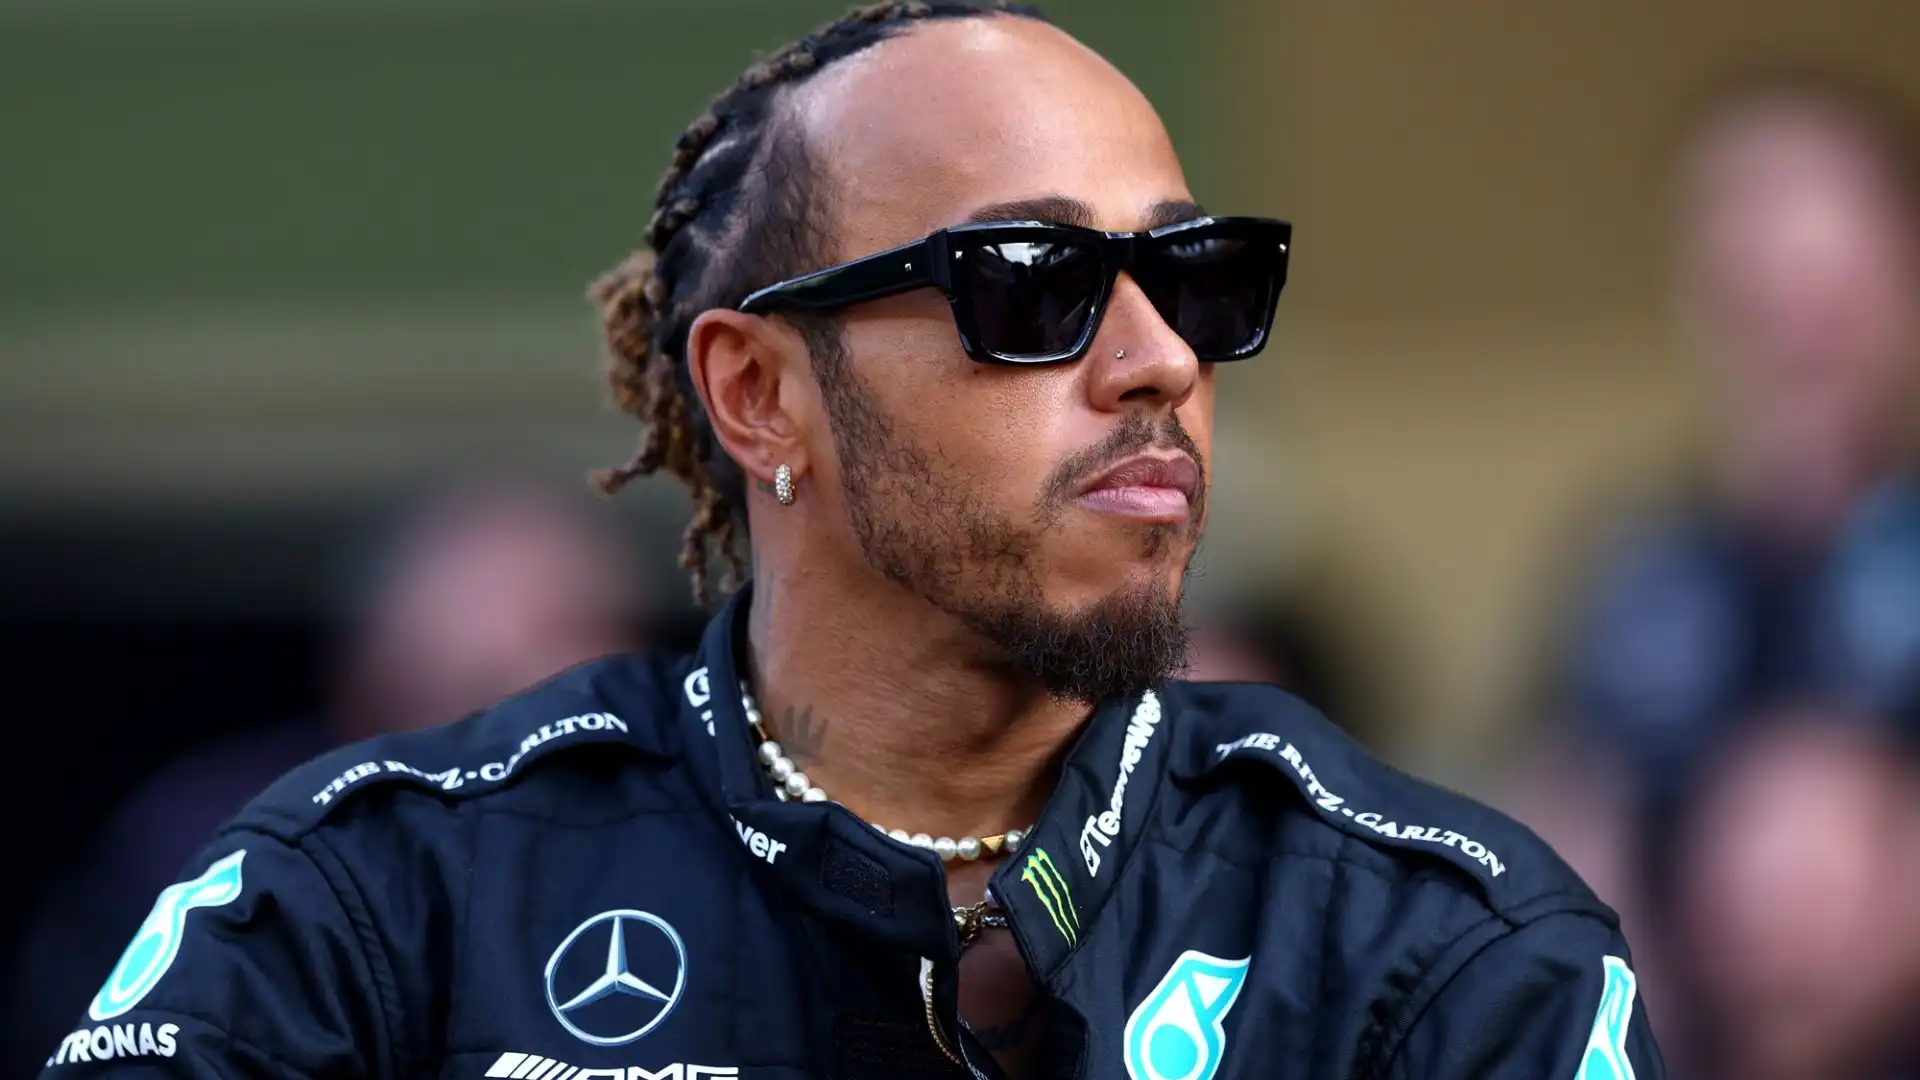 Si moltiplicano le indiscrezioni sul pilota che prenderà il posto di Lewis Hamilton alla Mercedes nel 2025